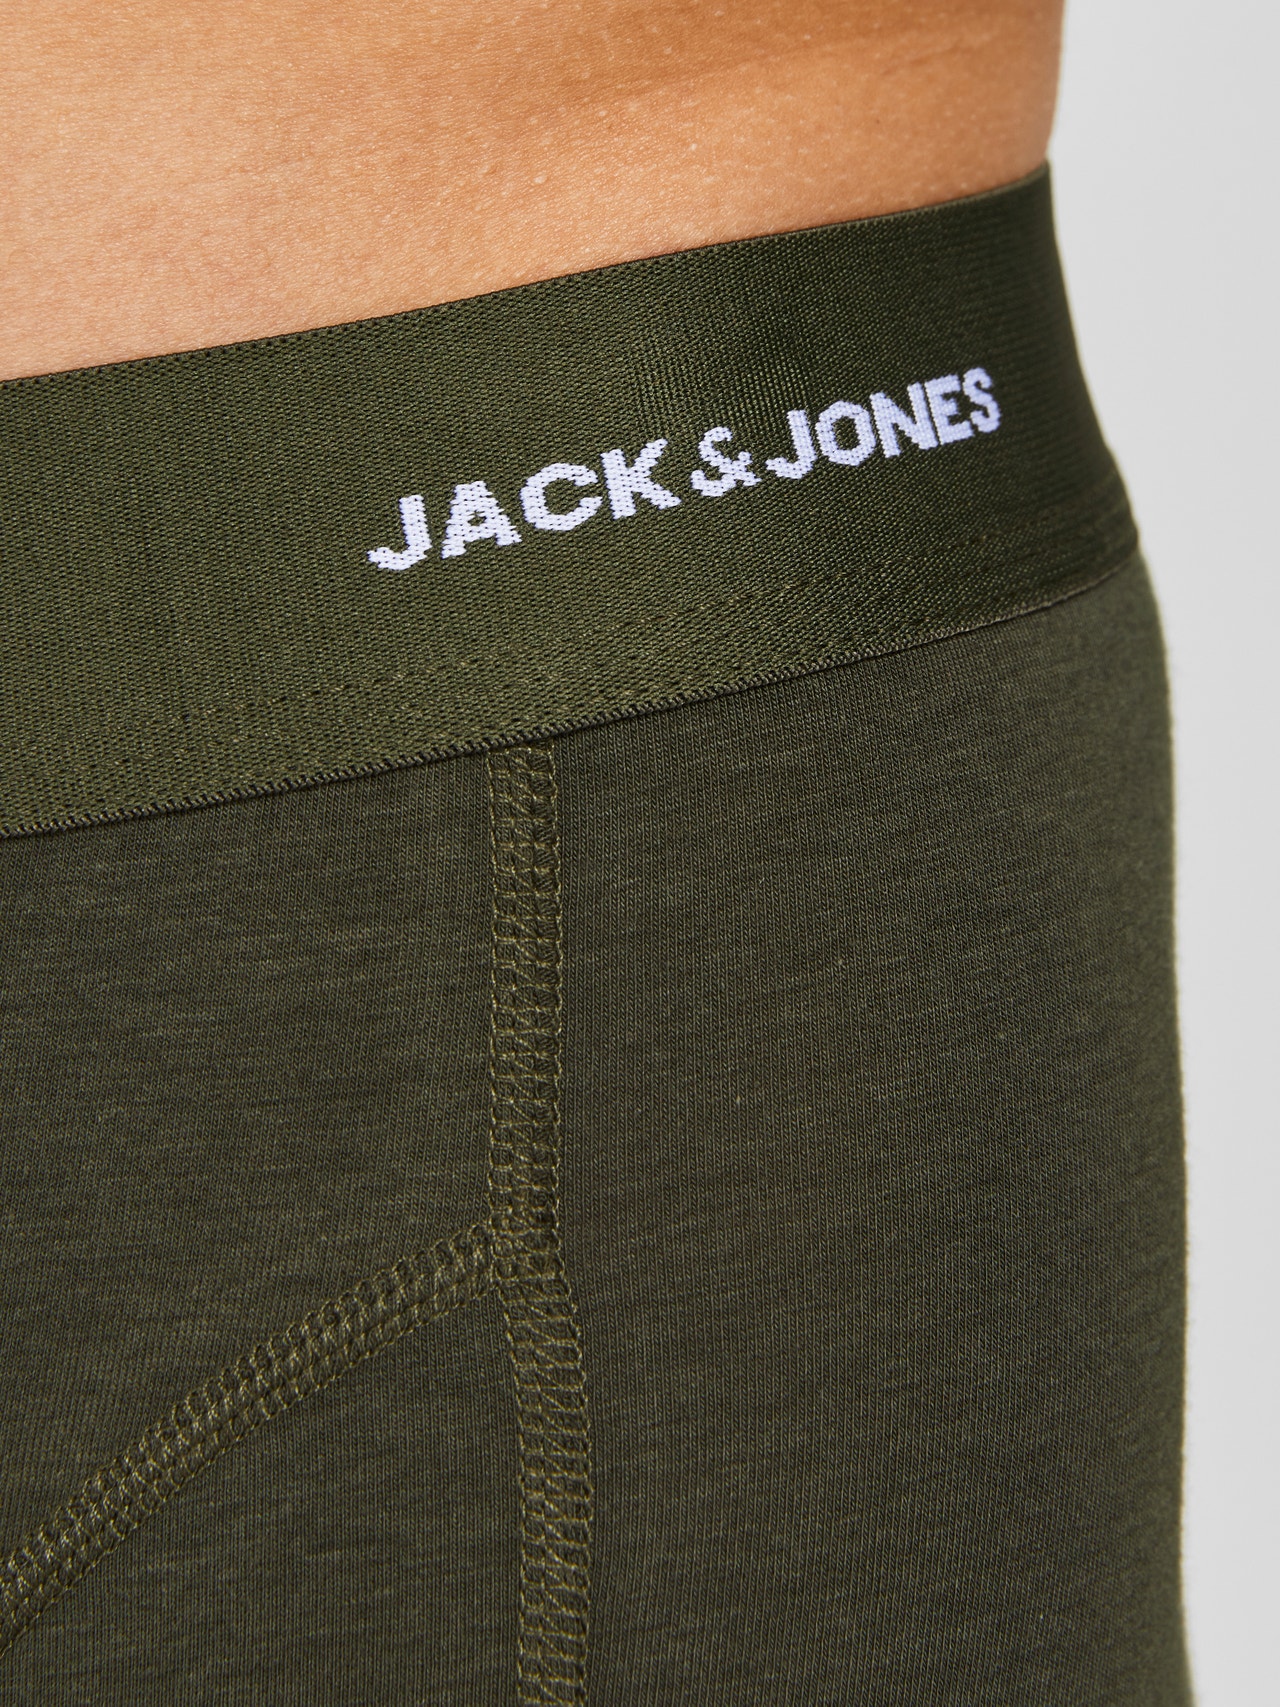 Jack & Jones 3-pack Trunks -Forest Night - 12198852